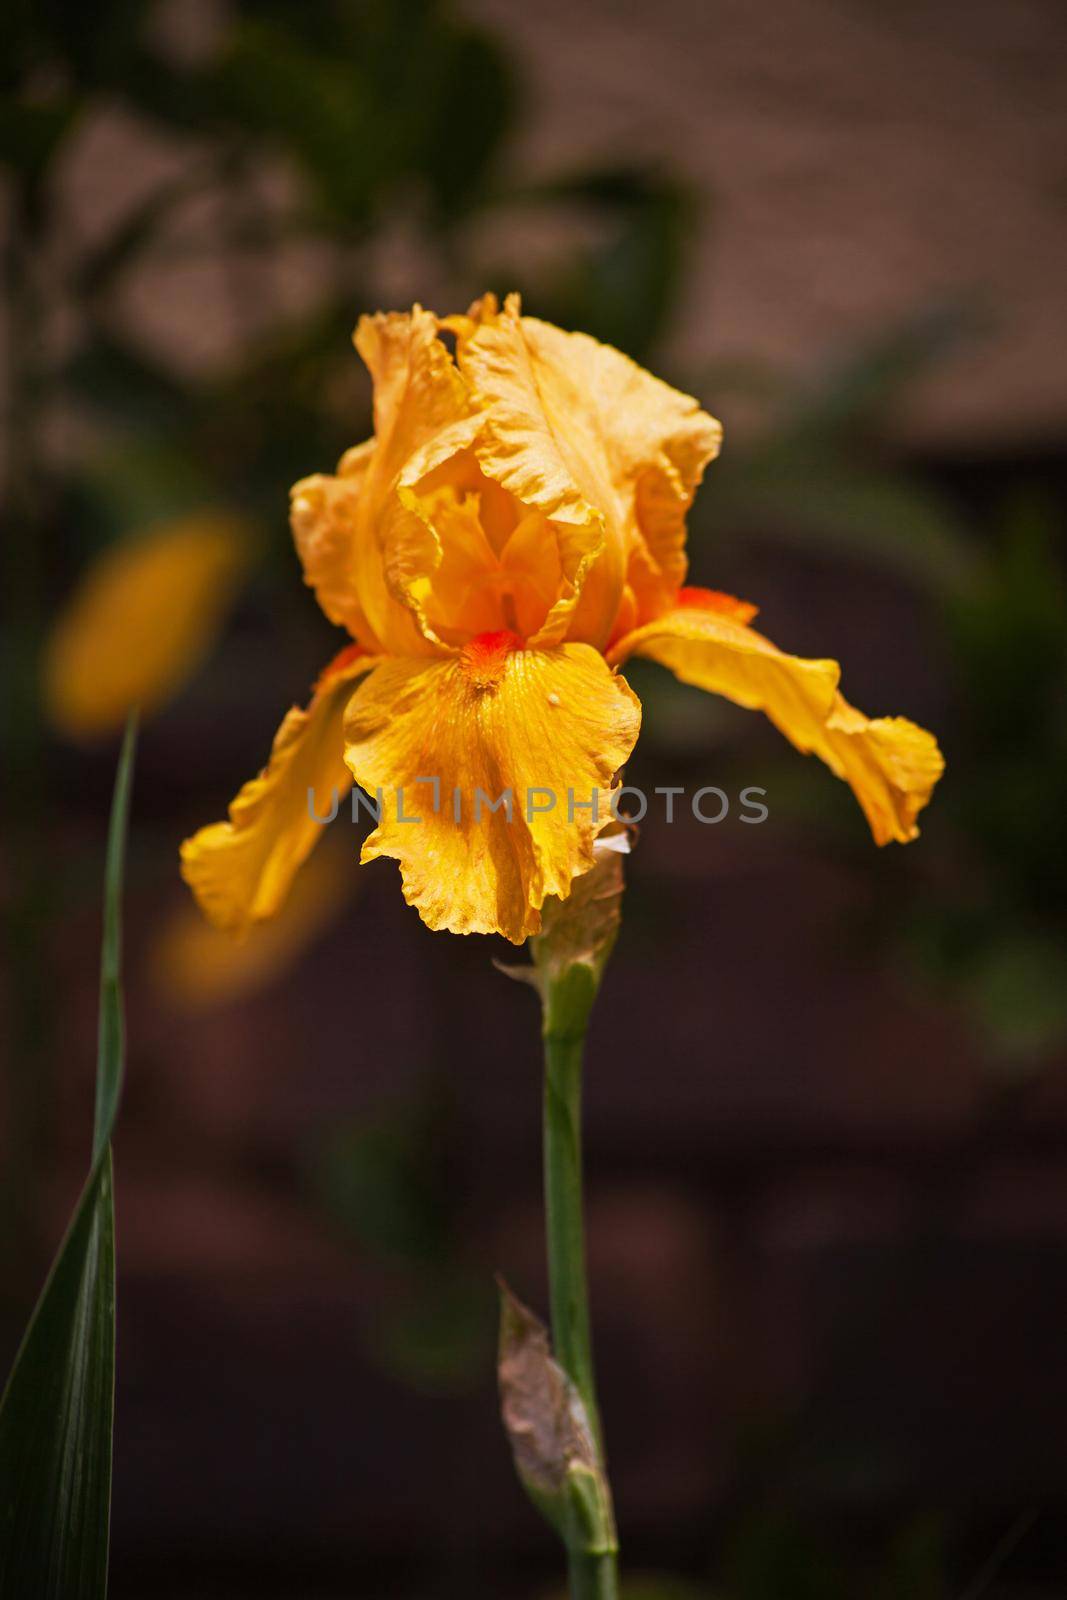 Singe Yellow Iris 14718 by kobus_peche